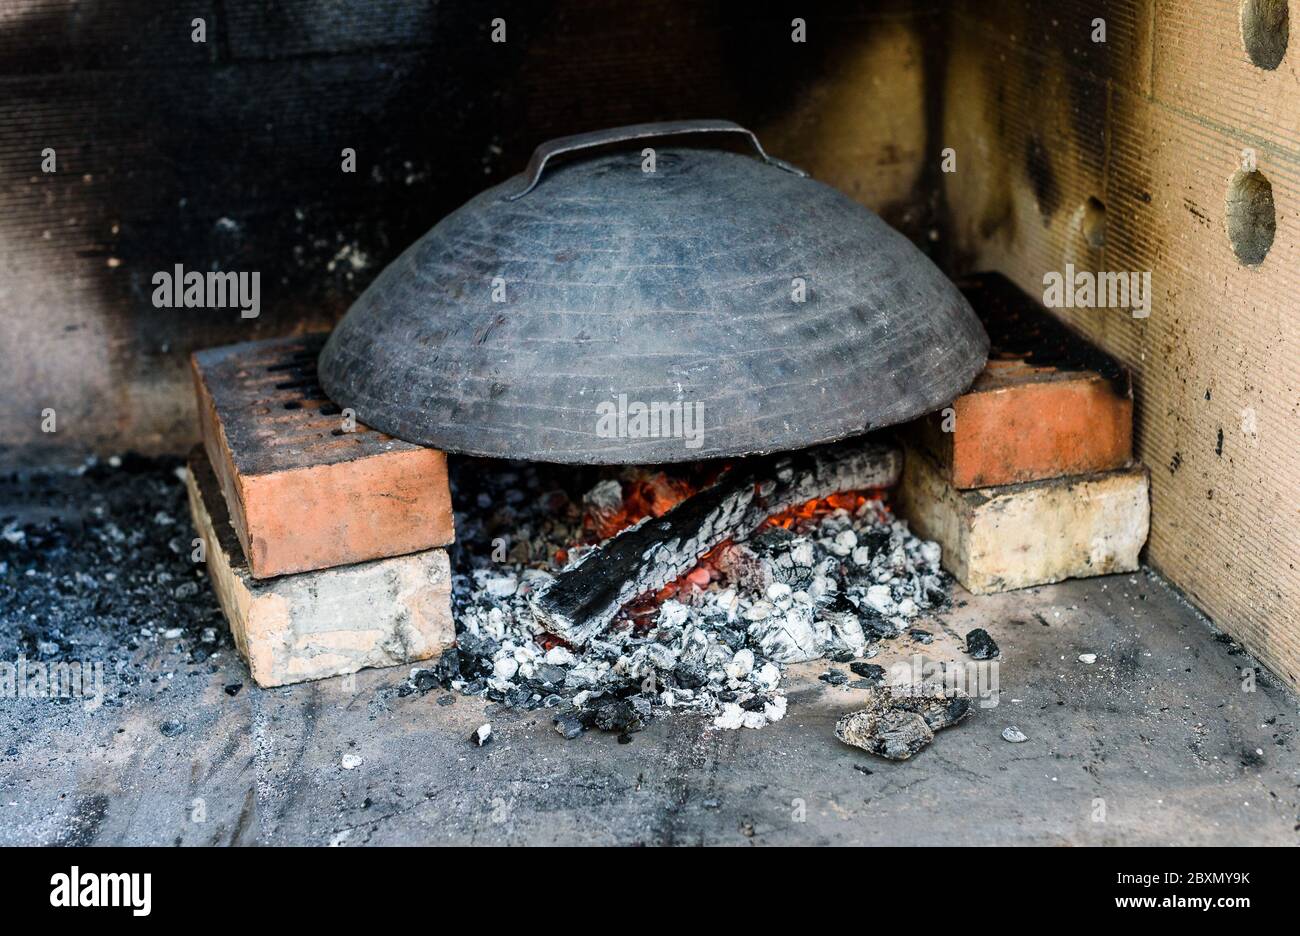 Fabrication de pizza italienne maison dans un four en brique avec cheminée.  Fabrication de pizza traditionnelle dans la cheminée en pierre de brique  avec bois de feu et de charbons.chauffage jusqu'à un